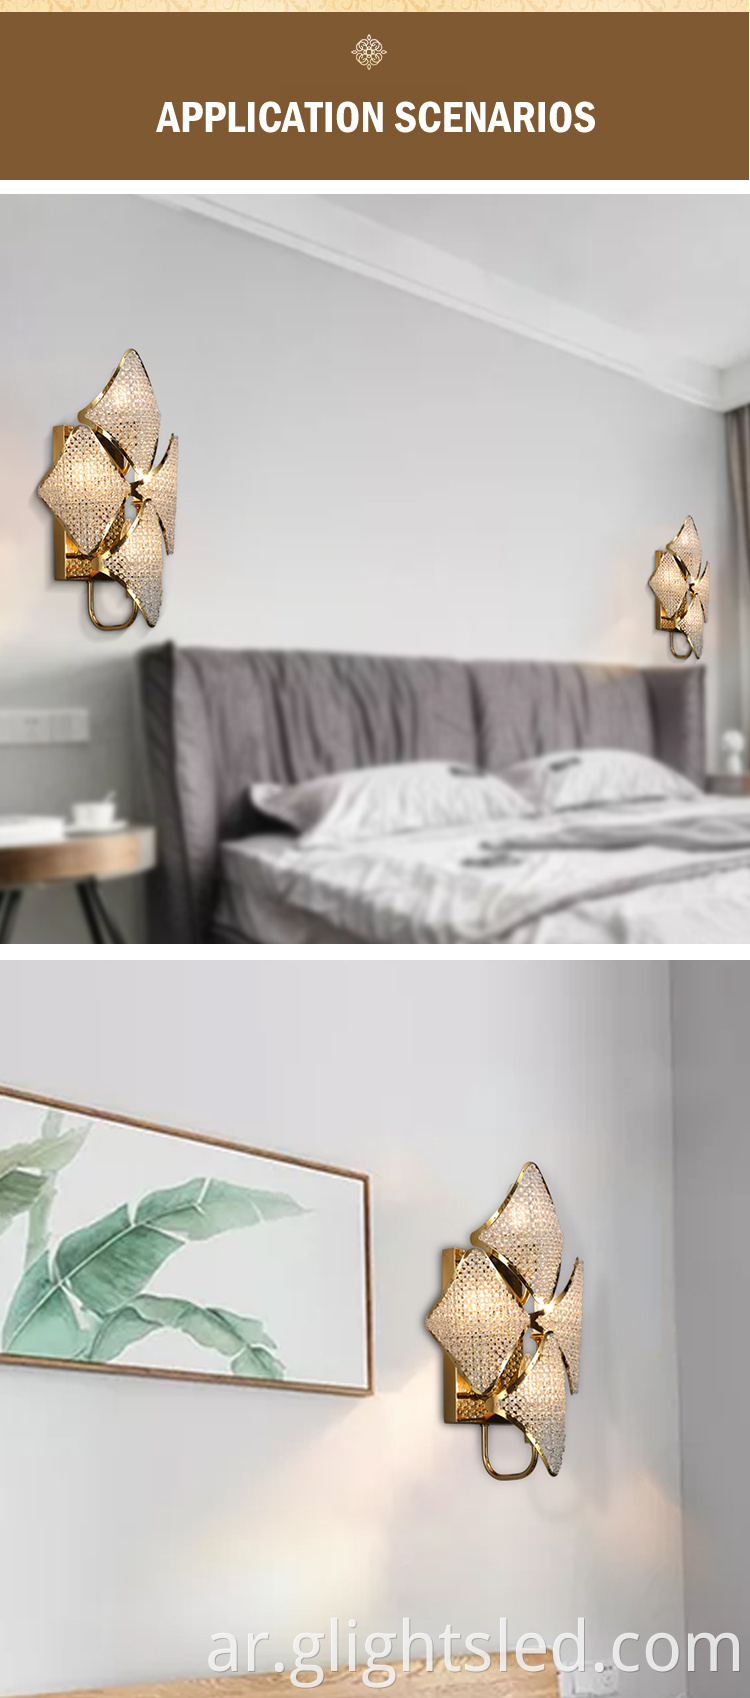 G-Lights التصميم الإبداعي ديكور داخلي لغرفة النوم بجانب السرير Led Crystal Wall Light